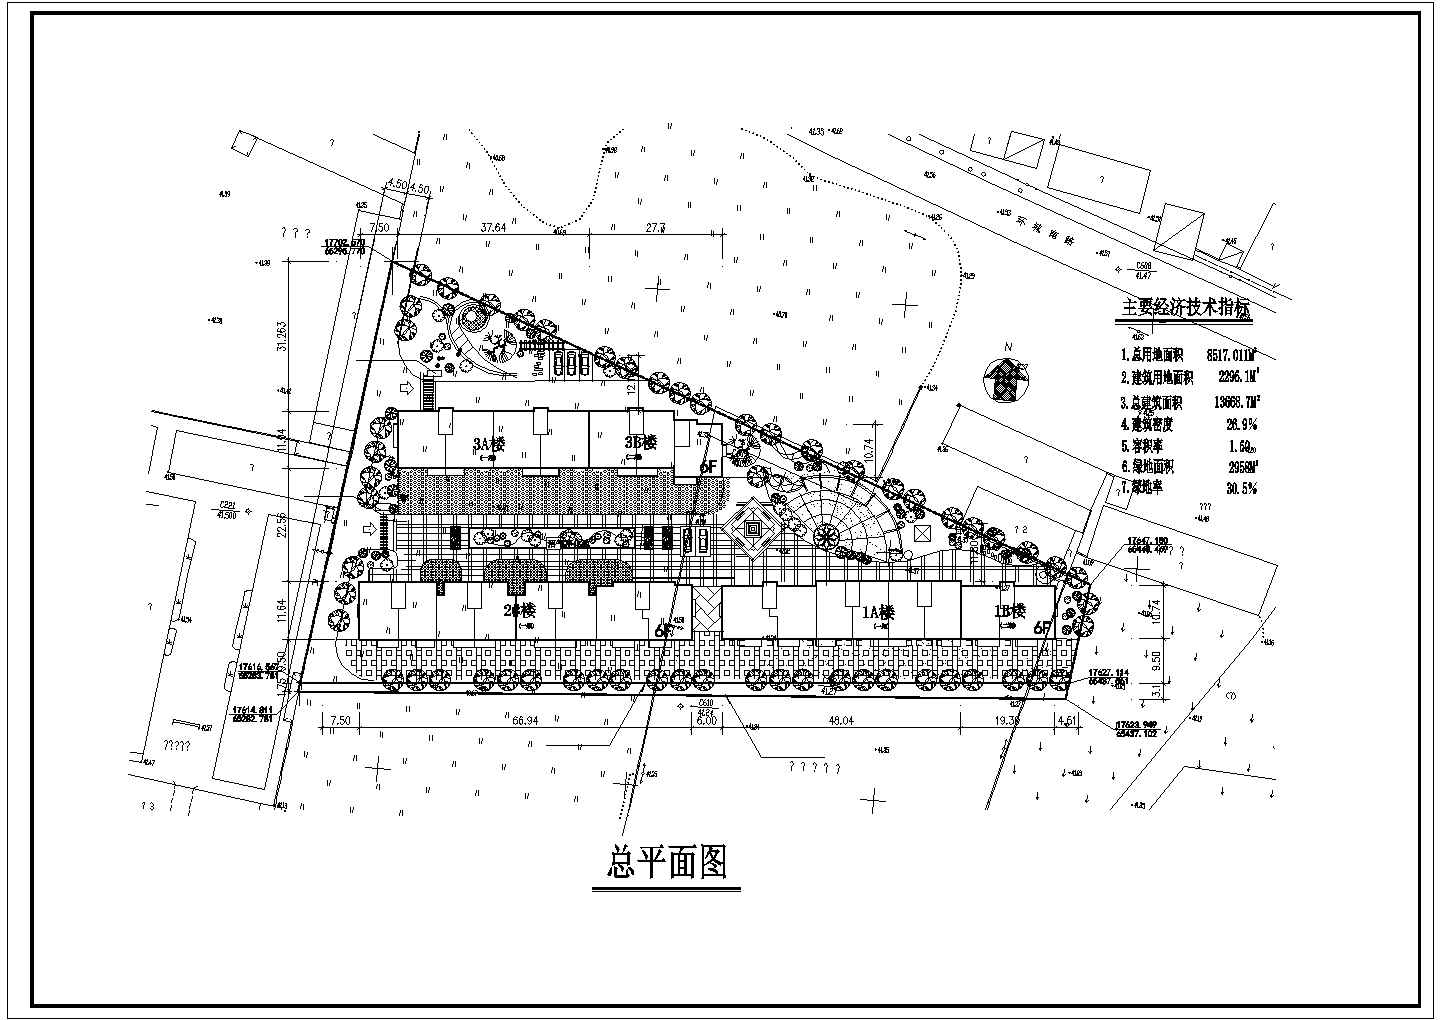 兰州市馨北花园小区总平面规划设计CAD图纸（三栋楼/占地8千平米）